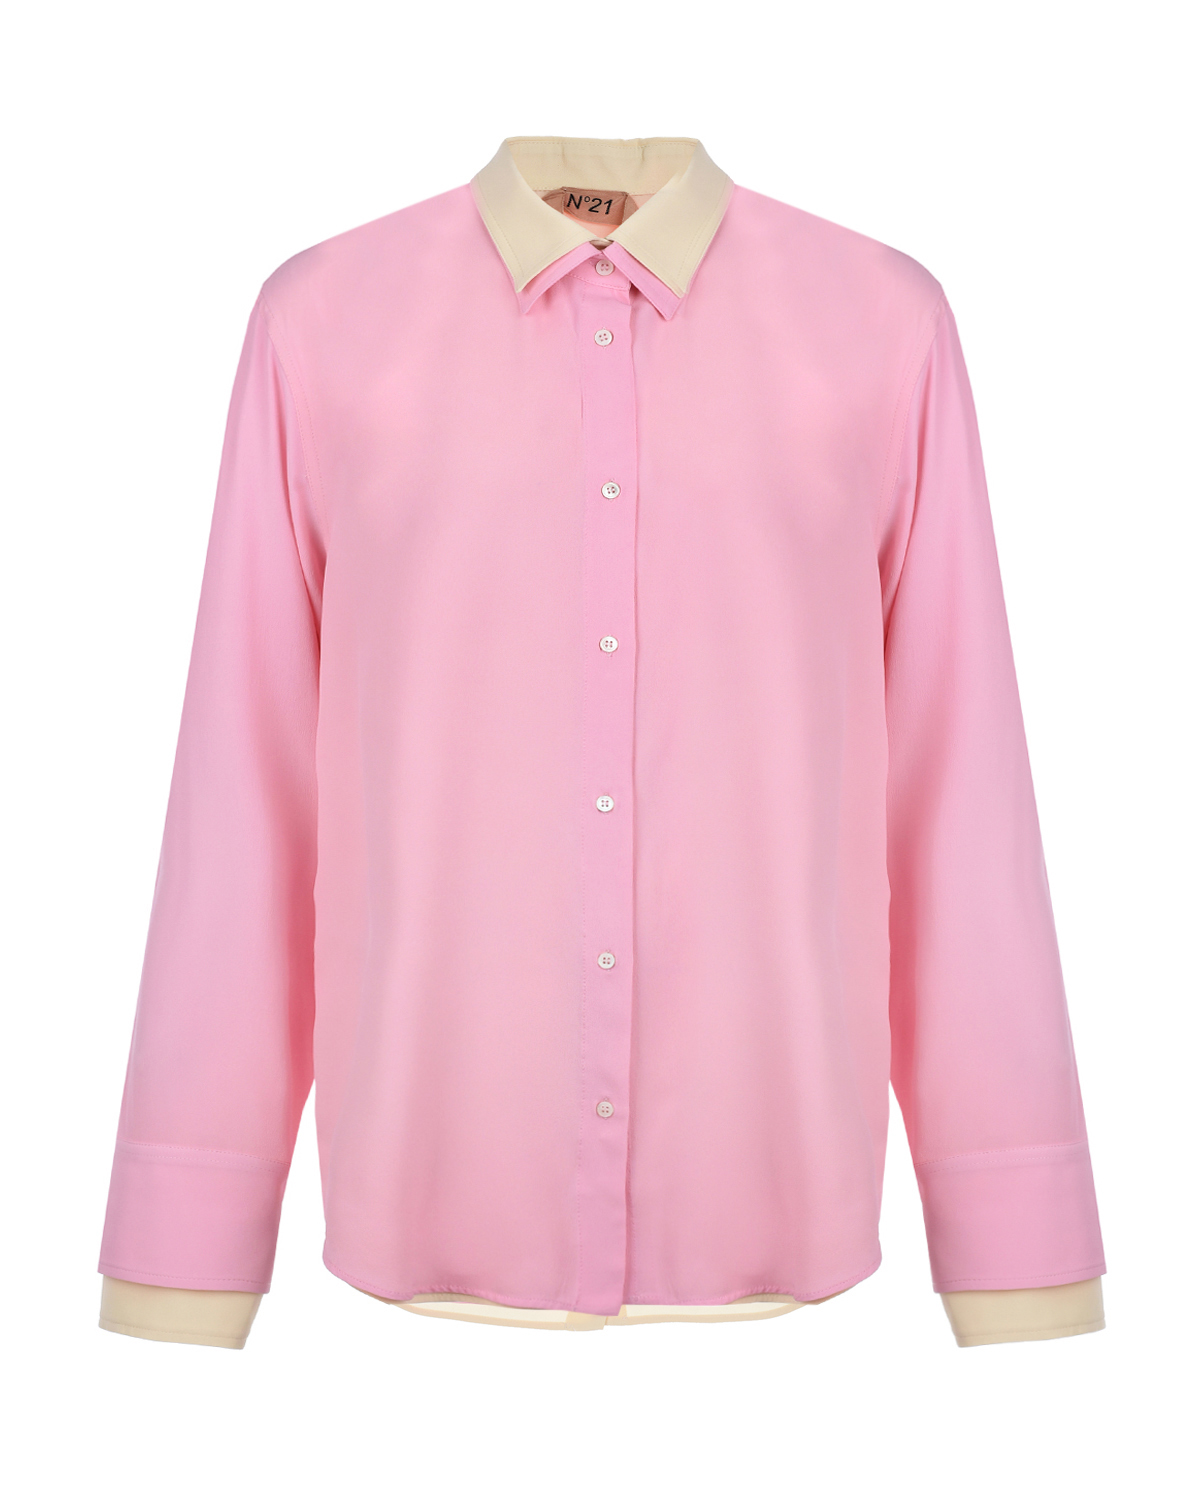 Двойная рубашка No. 21, размер 38, цвет розовый - фото 1